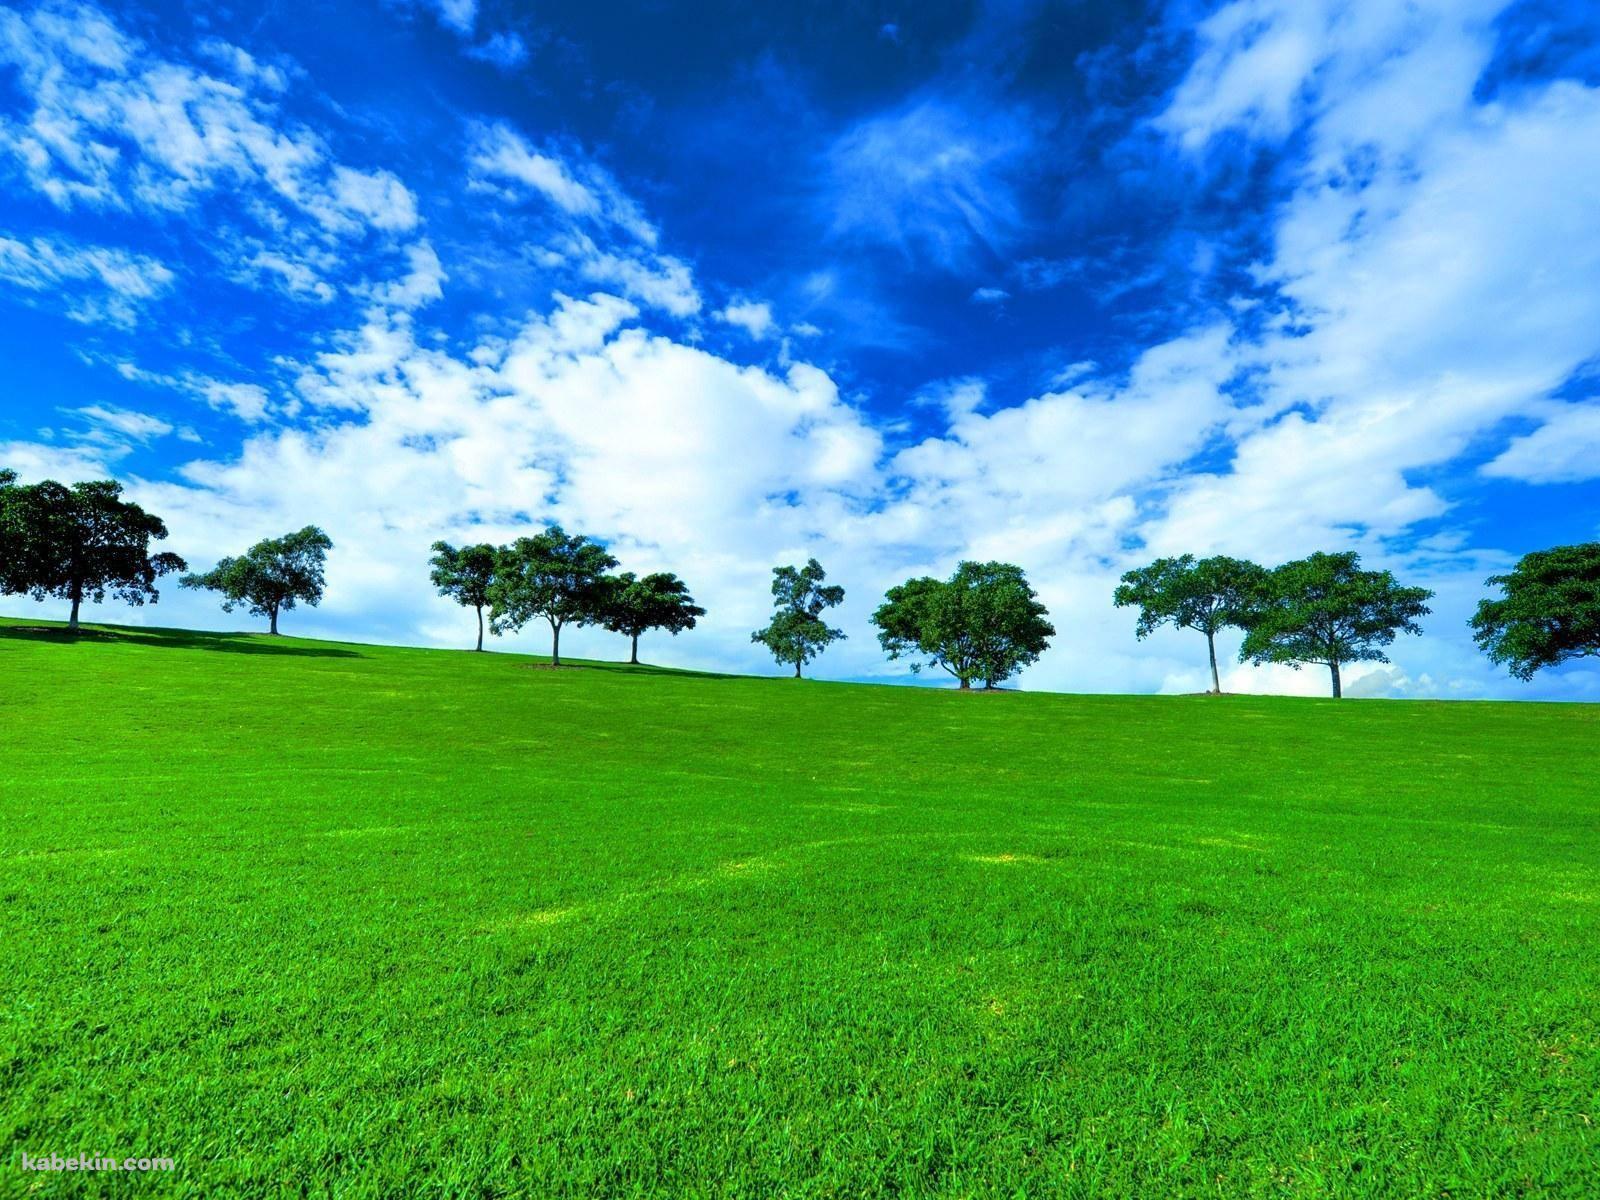 絶景 緑の草原と青い空の壁紙(1600px x 1200px) 高画質 PC・デスクトップ用